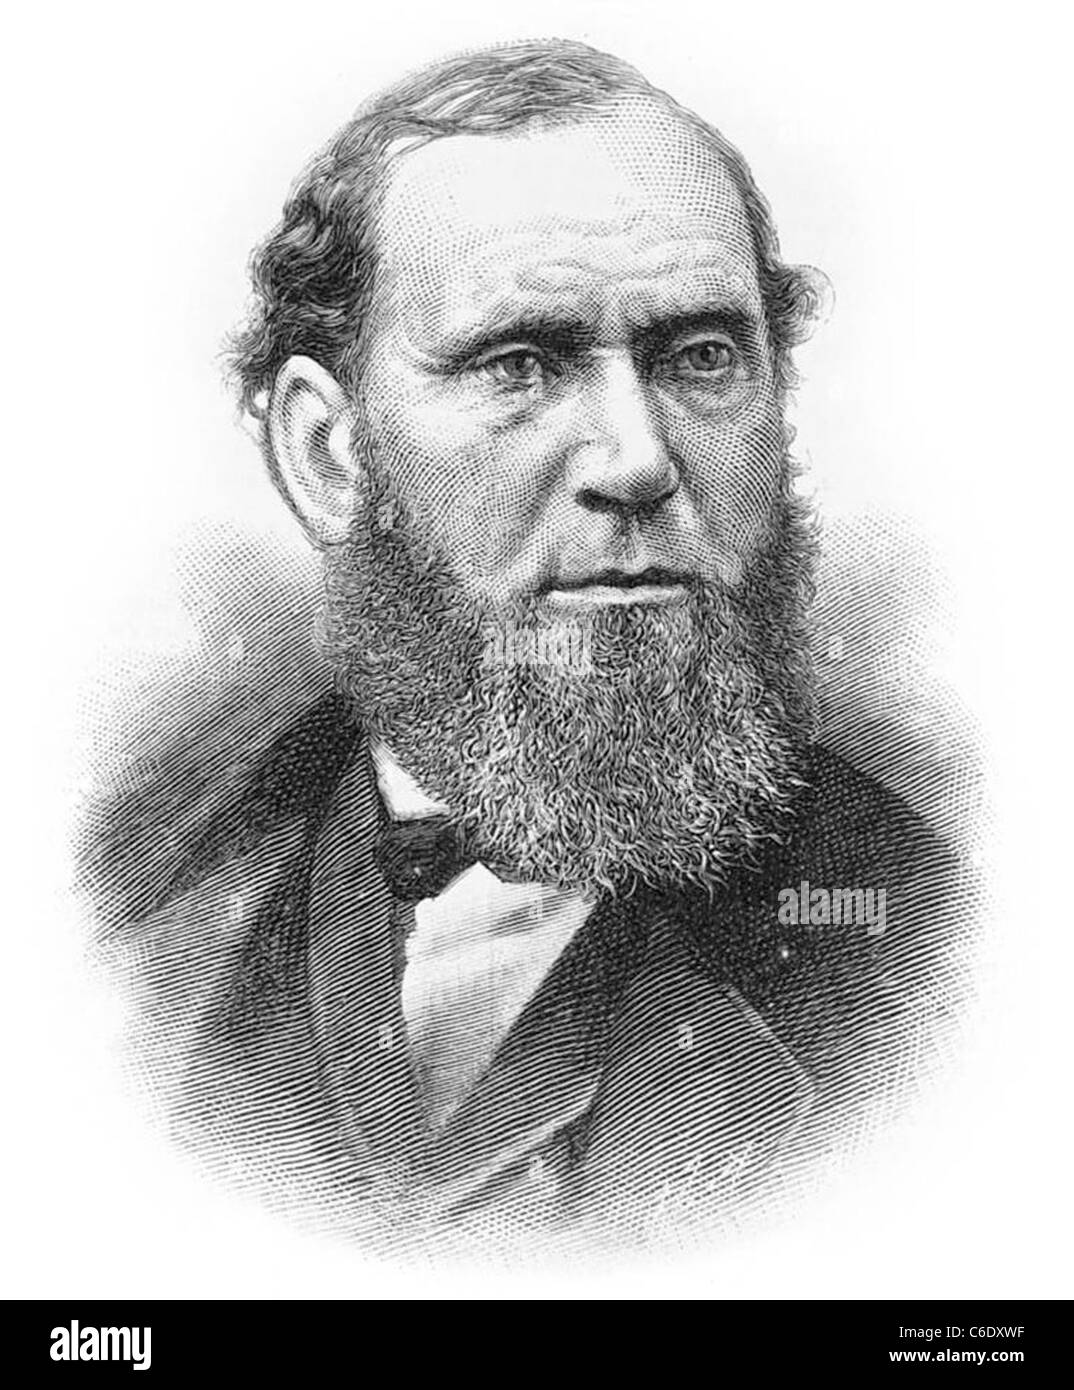 ALLAN PINKERTON (1819-1884) US-amerikanischer Detektiv und Spion, Pinkerton National Detective Agency gegründet Stockfoto